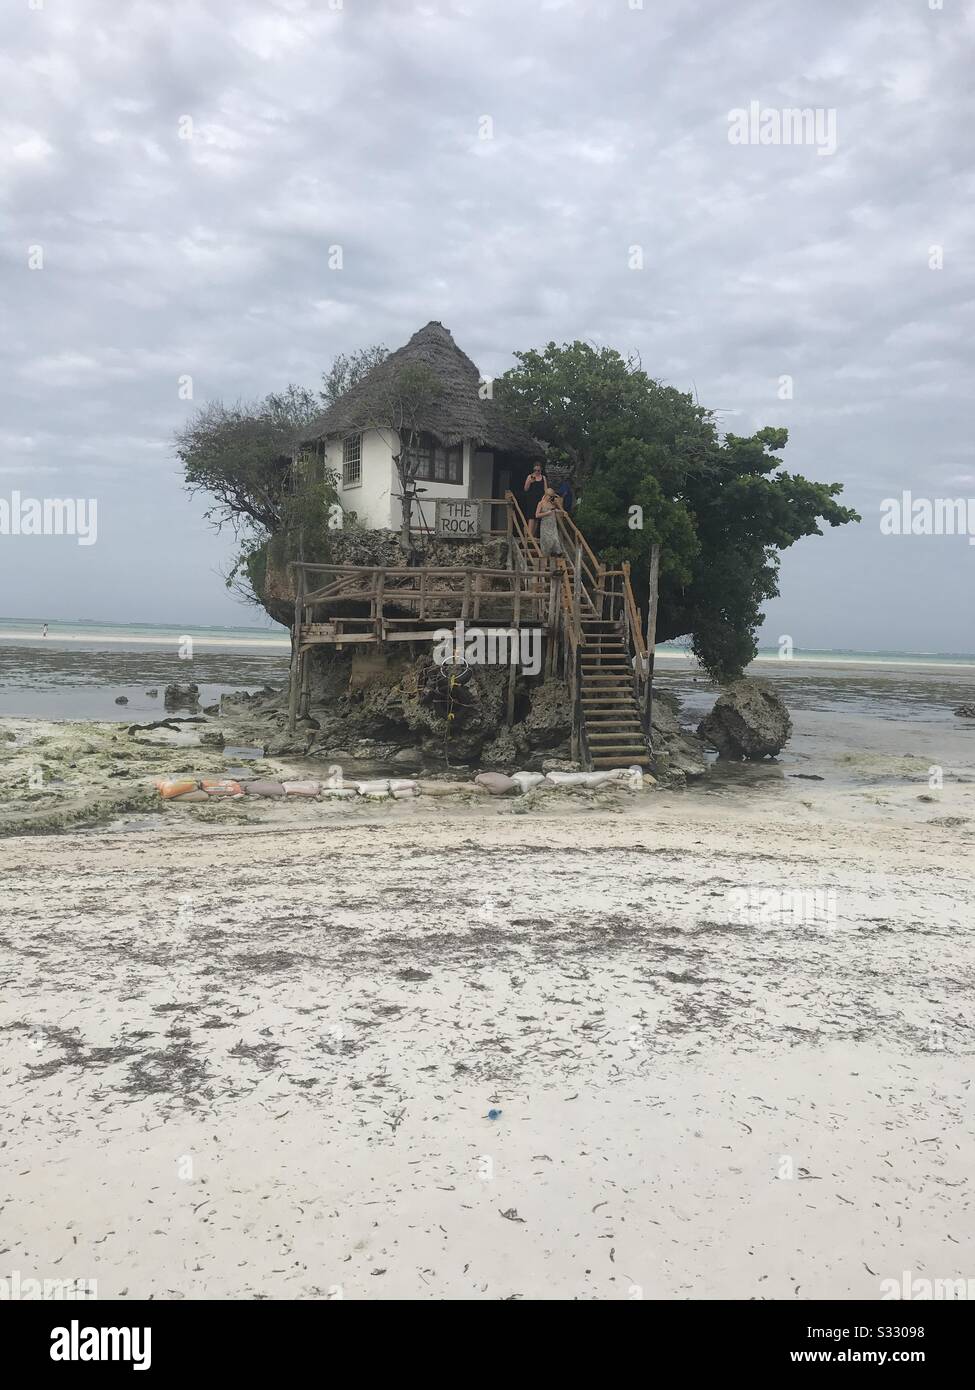 Der Felsen: Eine winzige Insel östlich der Insel Sansibar, die Menschen bei Ebbe zu Fuß erreichen können, enthält ein Restaurant und ein paar Bäume. Stockfoto